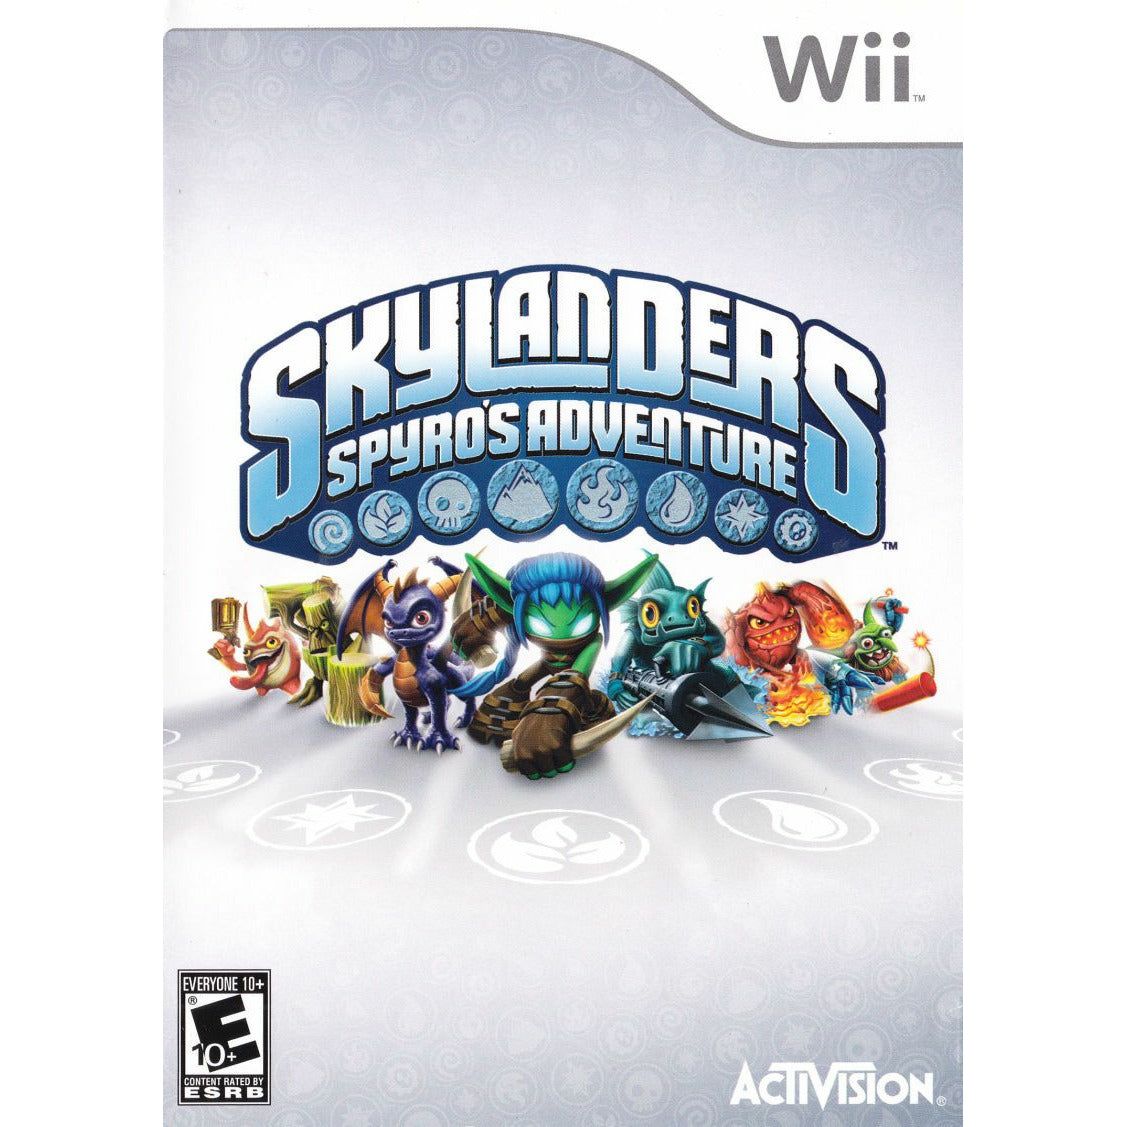 Wii - Skylanders Spyro's Adventure (Game Only)